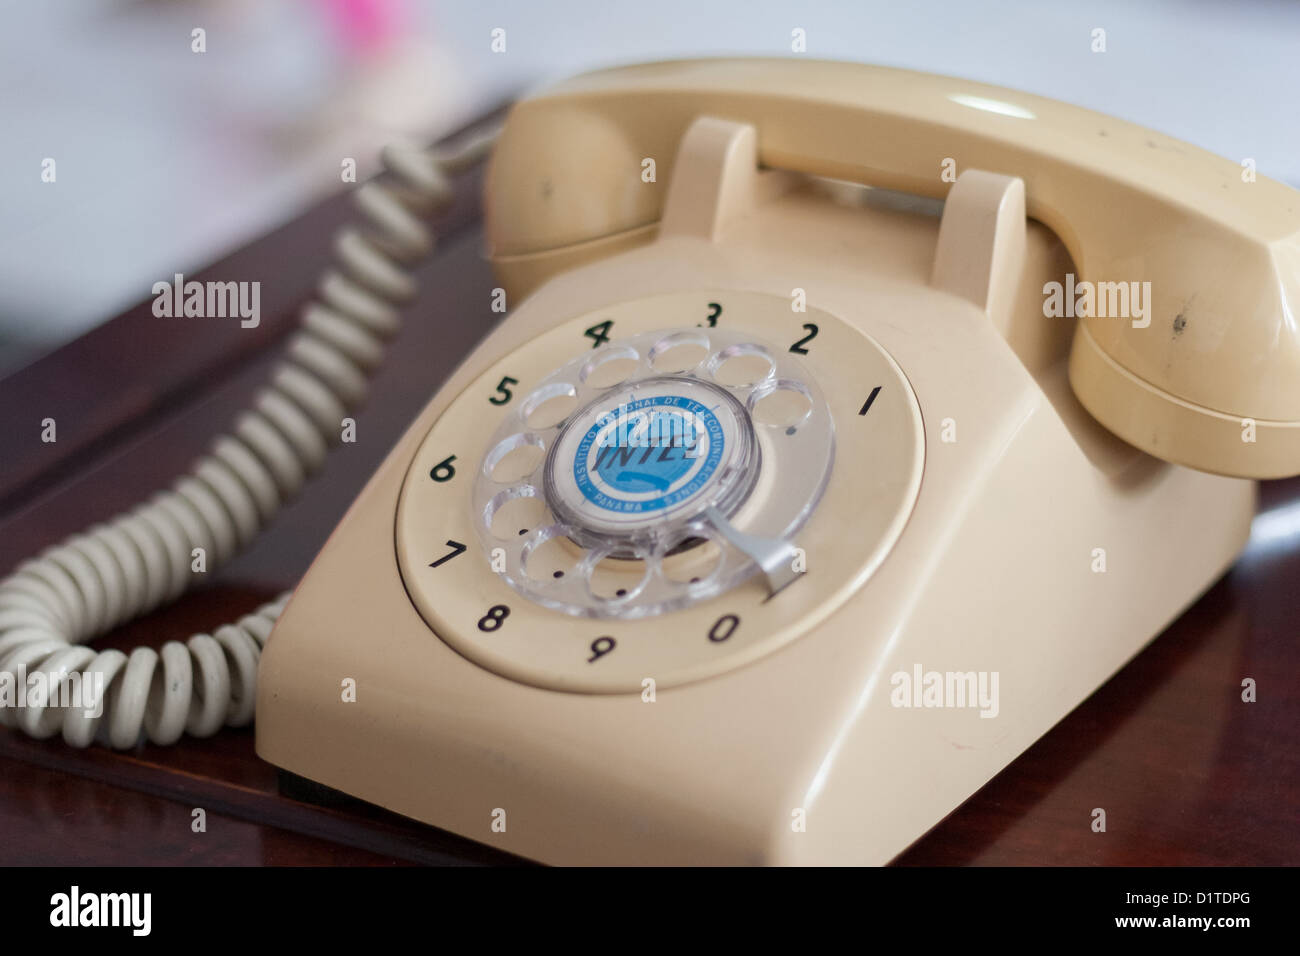 Telephone version Banque d'images détourées - Alamy